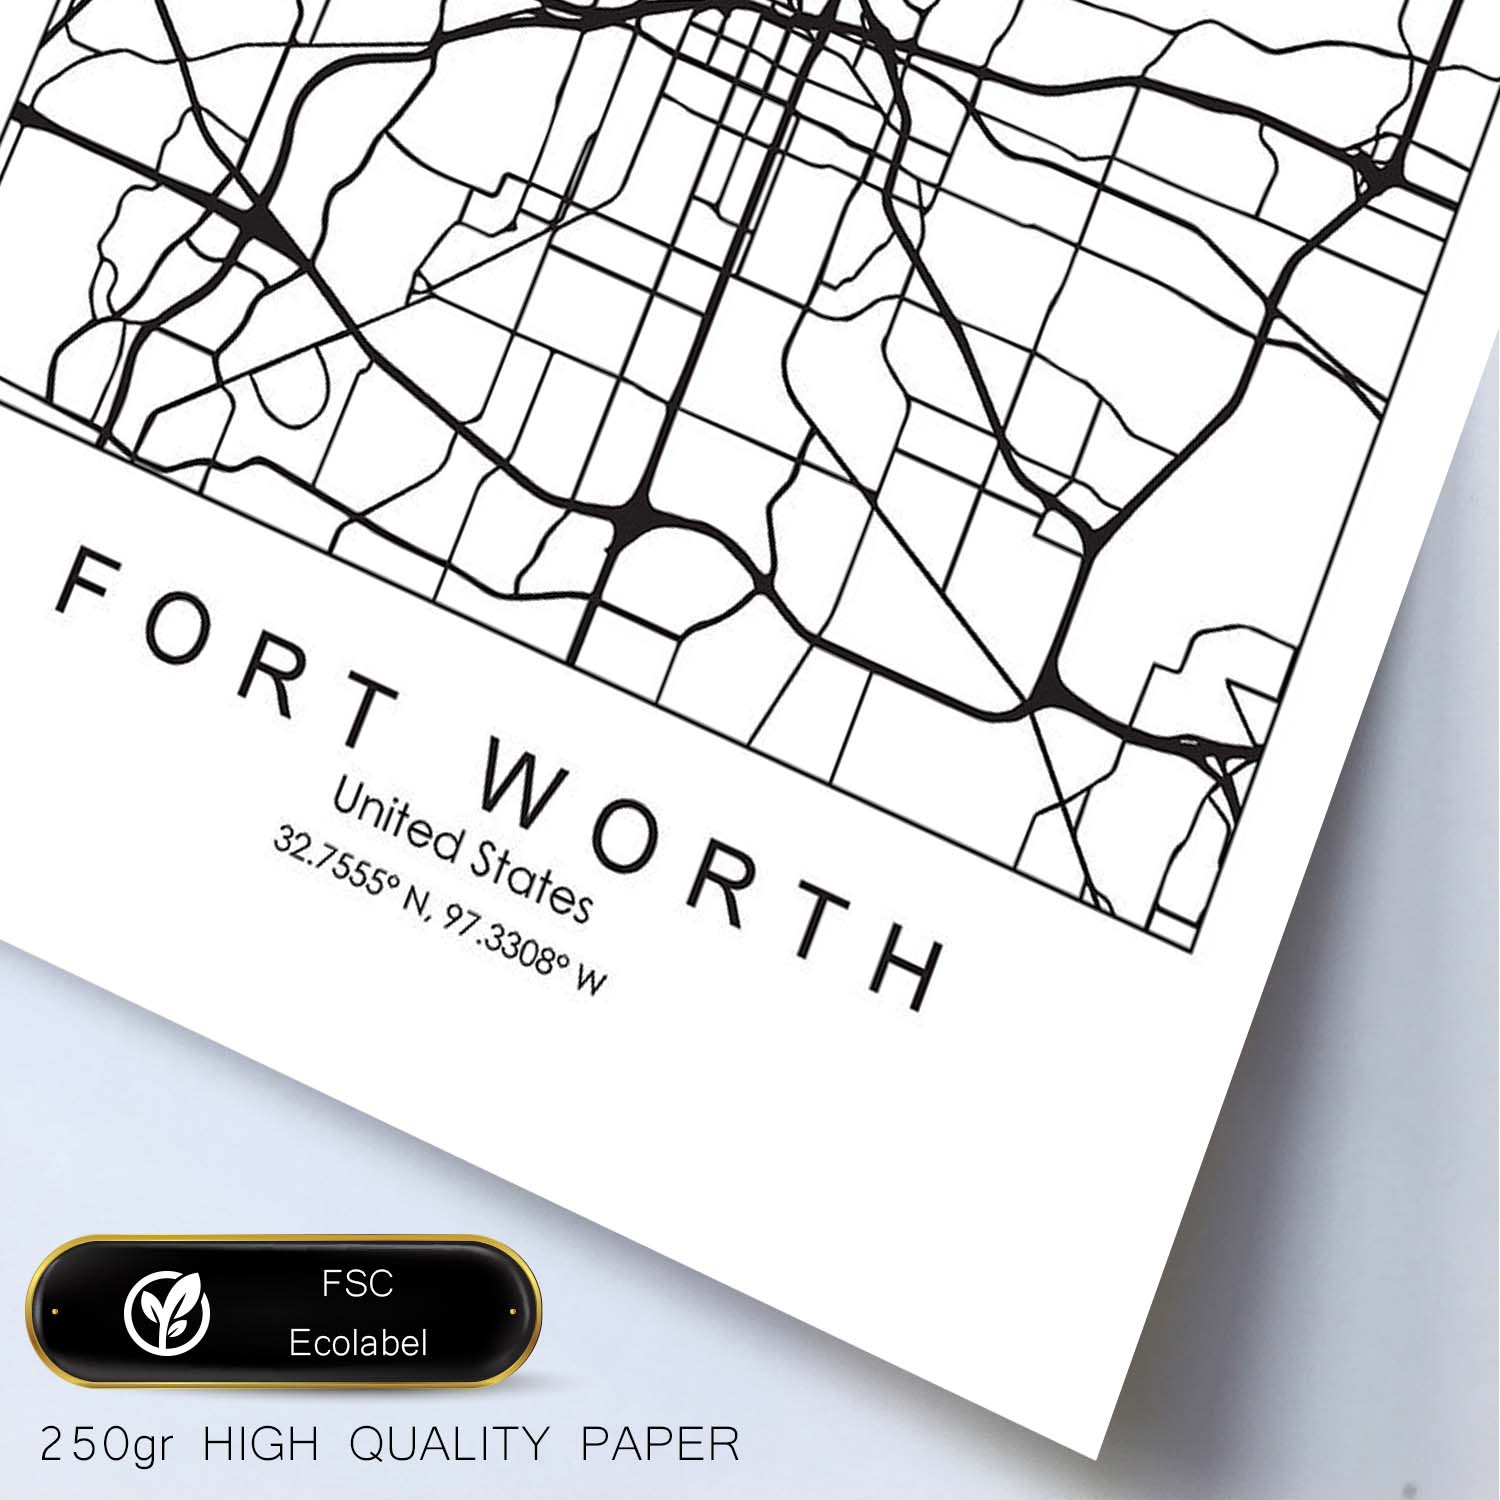 Poster con mapa de Fort Worth. Lámina de Estados Unidos, con imágenes de mapas y carreteras-Artwork-Nacnic-Nacnic Estudio SL